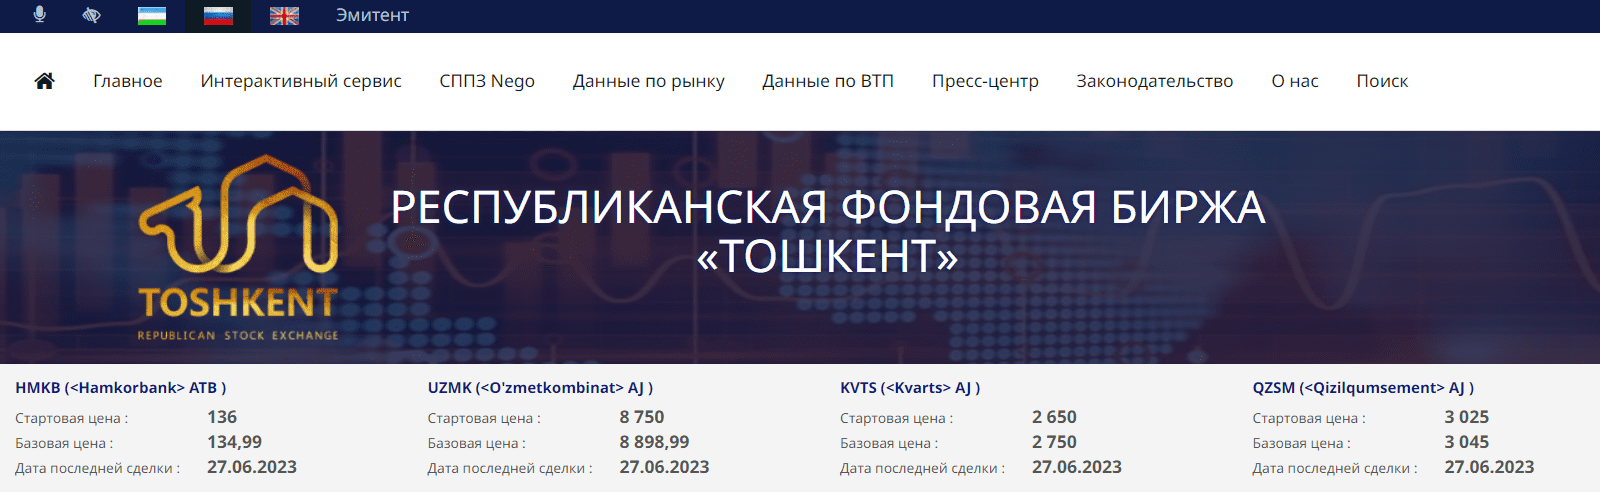 Республиканская фондовая биржа "Тошкент" (uzse.uz) - официальный сайт